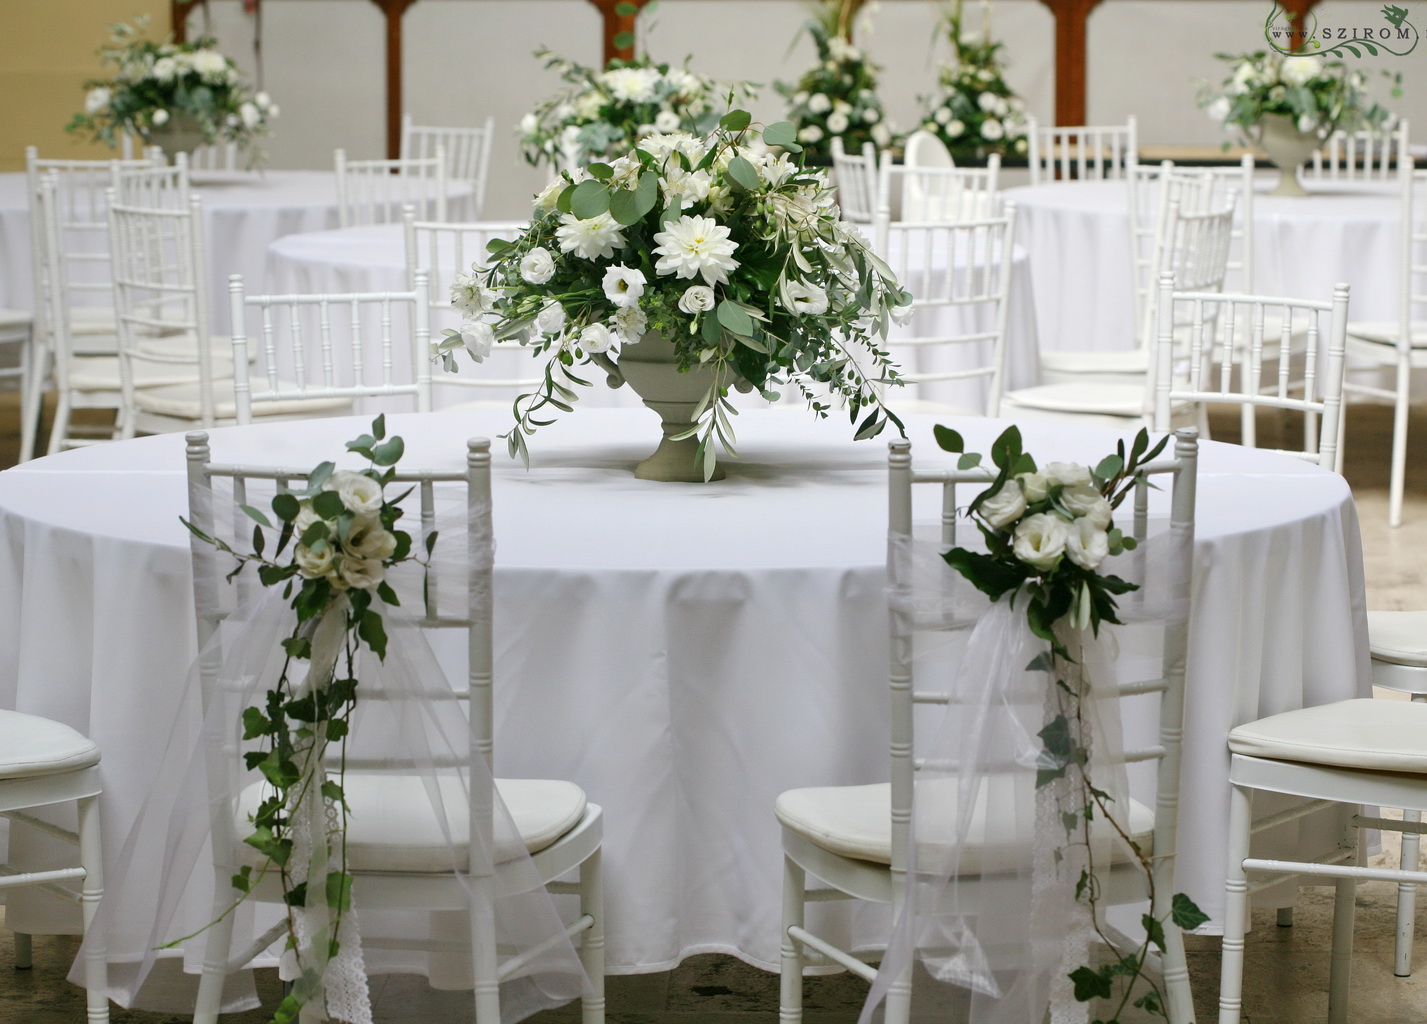 Esküvői asztaldísz rusztikus kő serlegben,  Vajdahunyad Vár Lovas terem (liziantusz, dália, alstromelia, fehér )